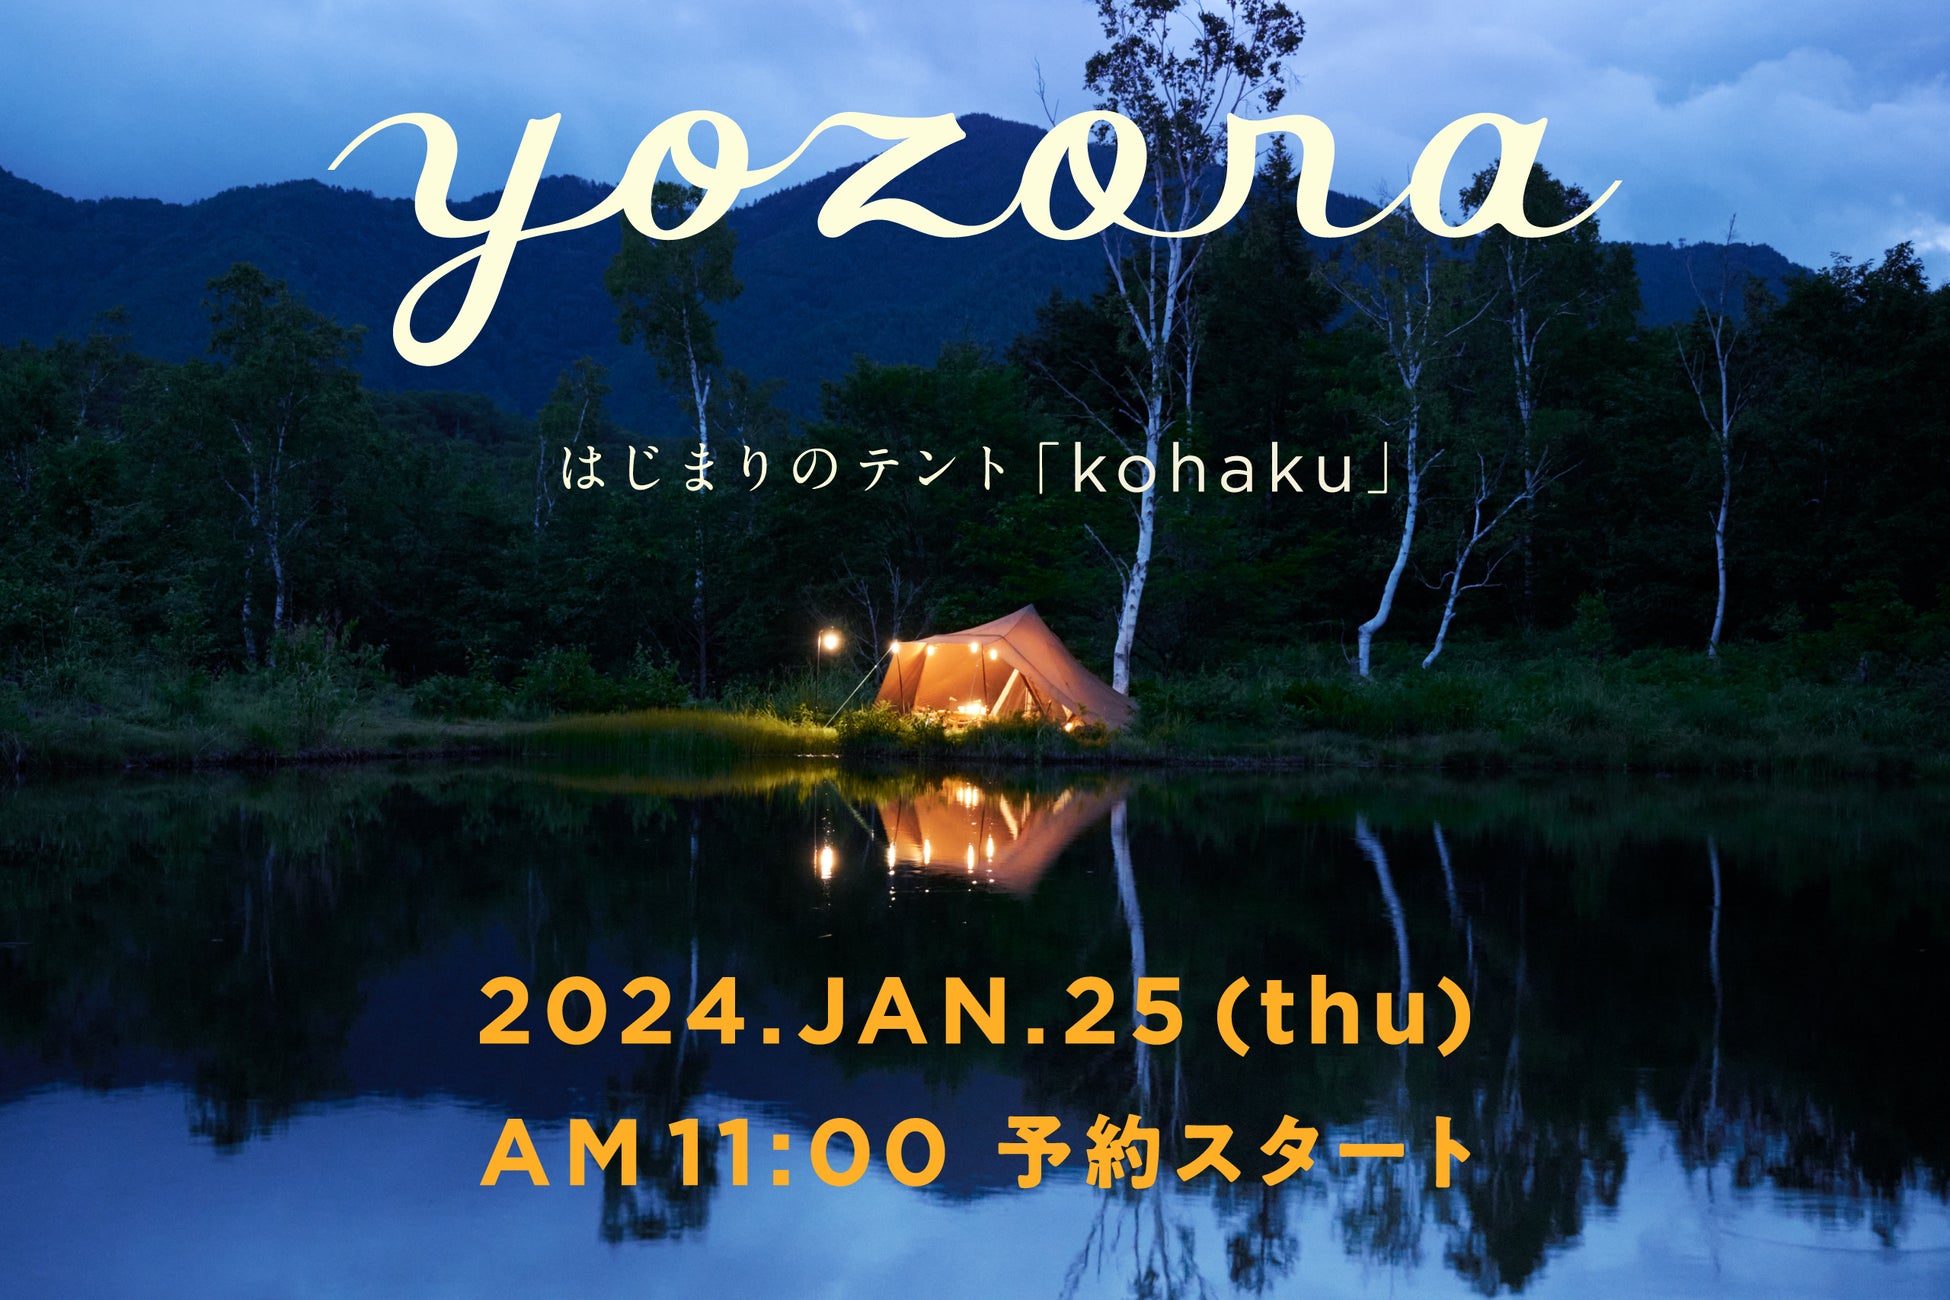 ほぼ日キャンププロジェクト「yozora」。はじまりのテント「kohaku」ができました。